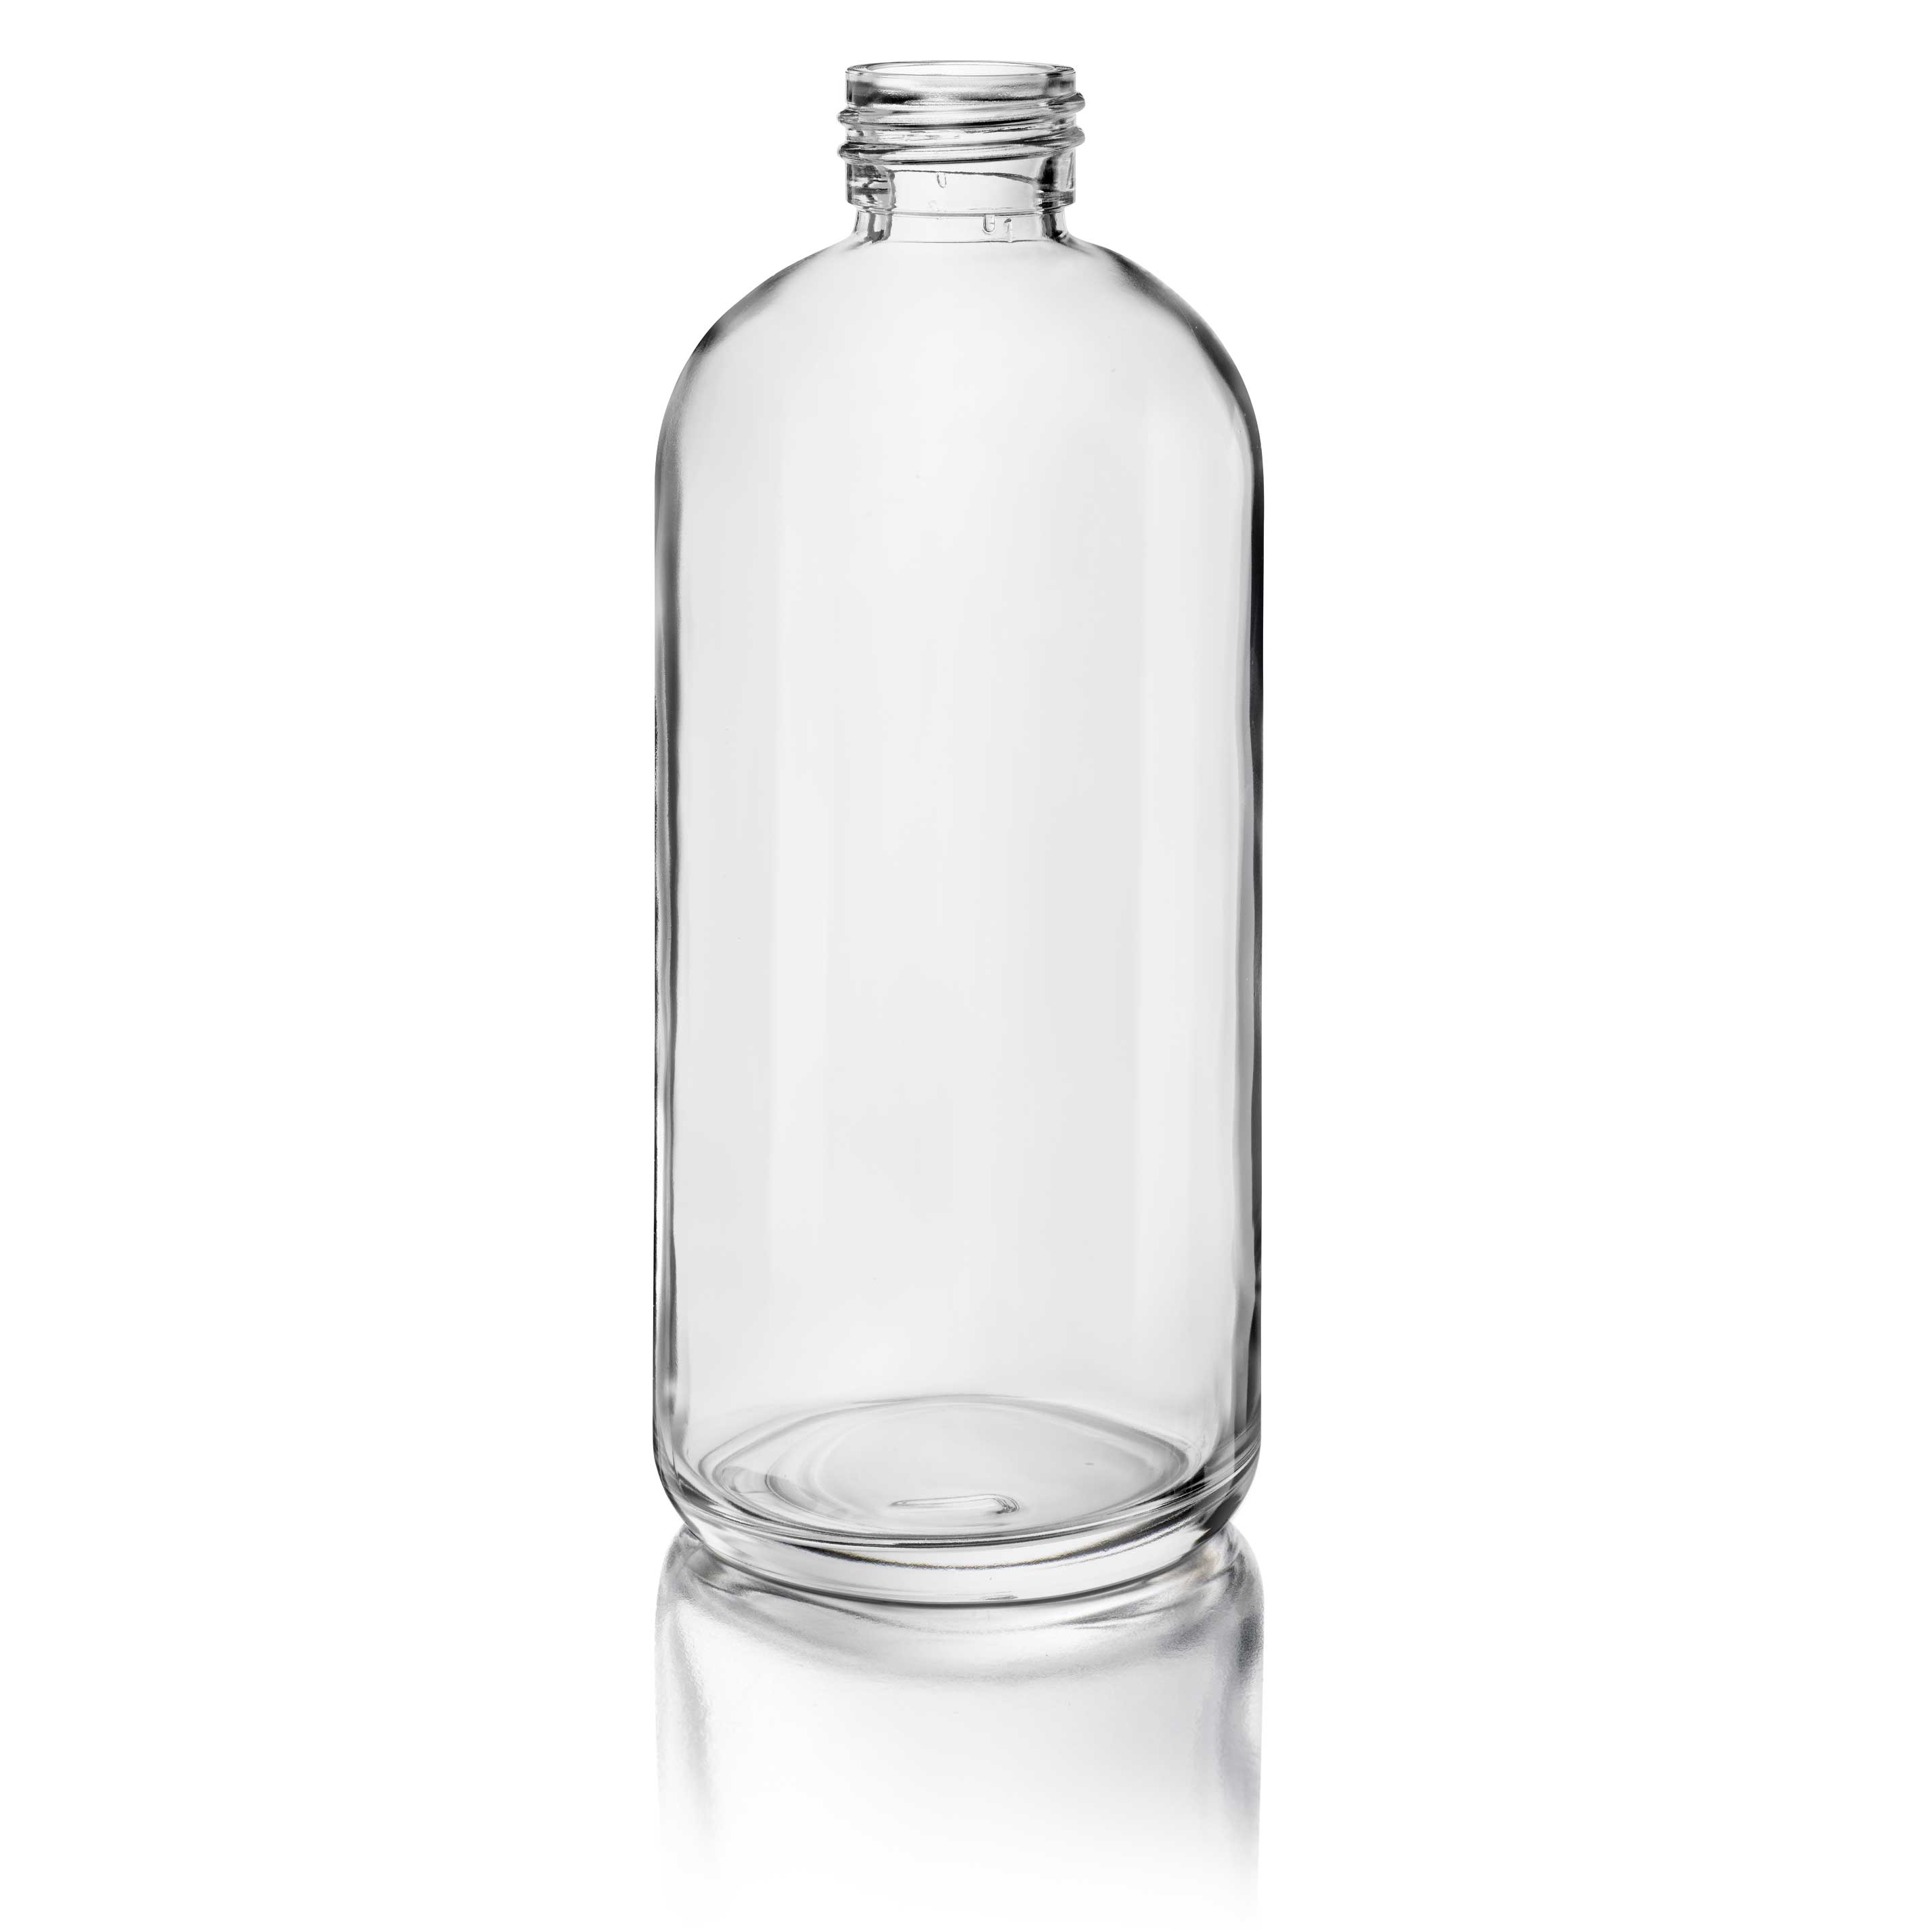 Cosmetic bottle Linden Light Weight 200 ml, 24/410, Flint